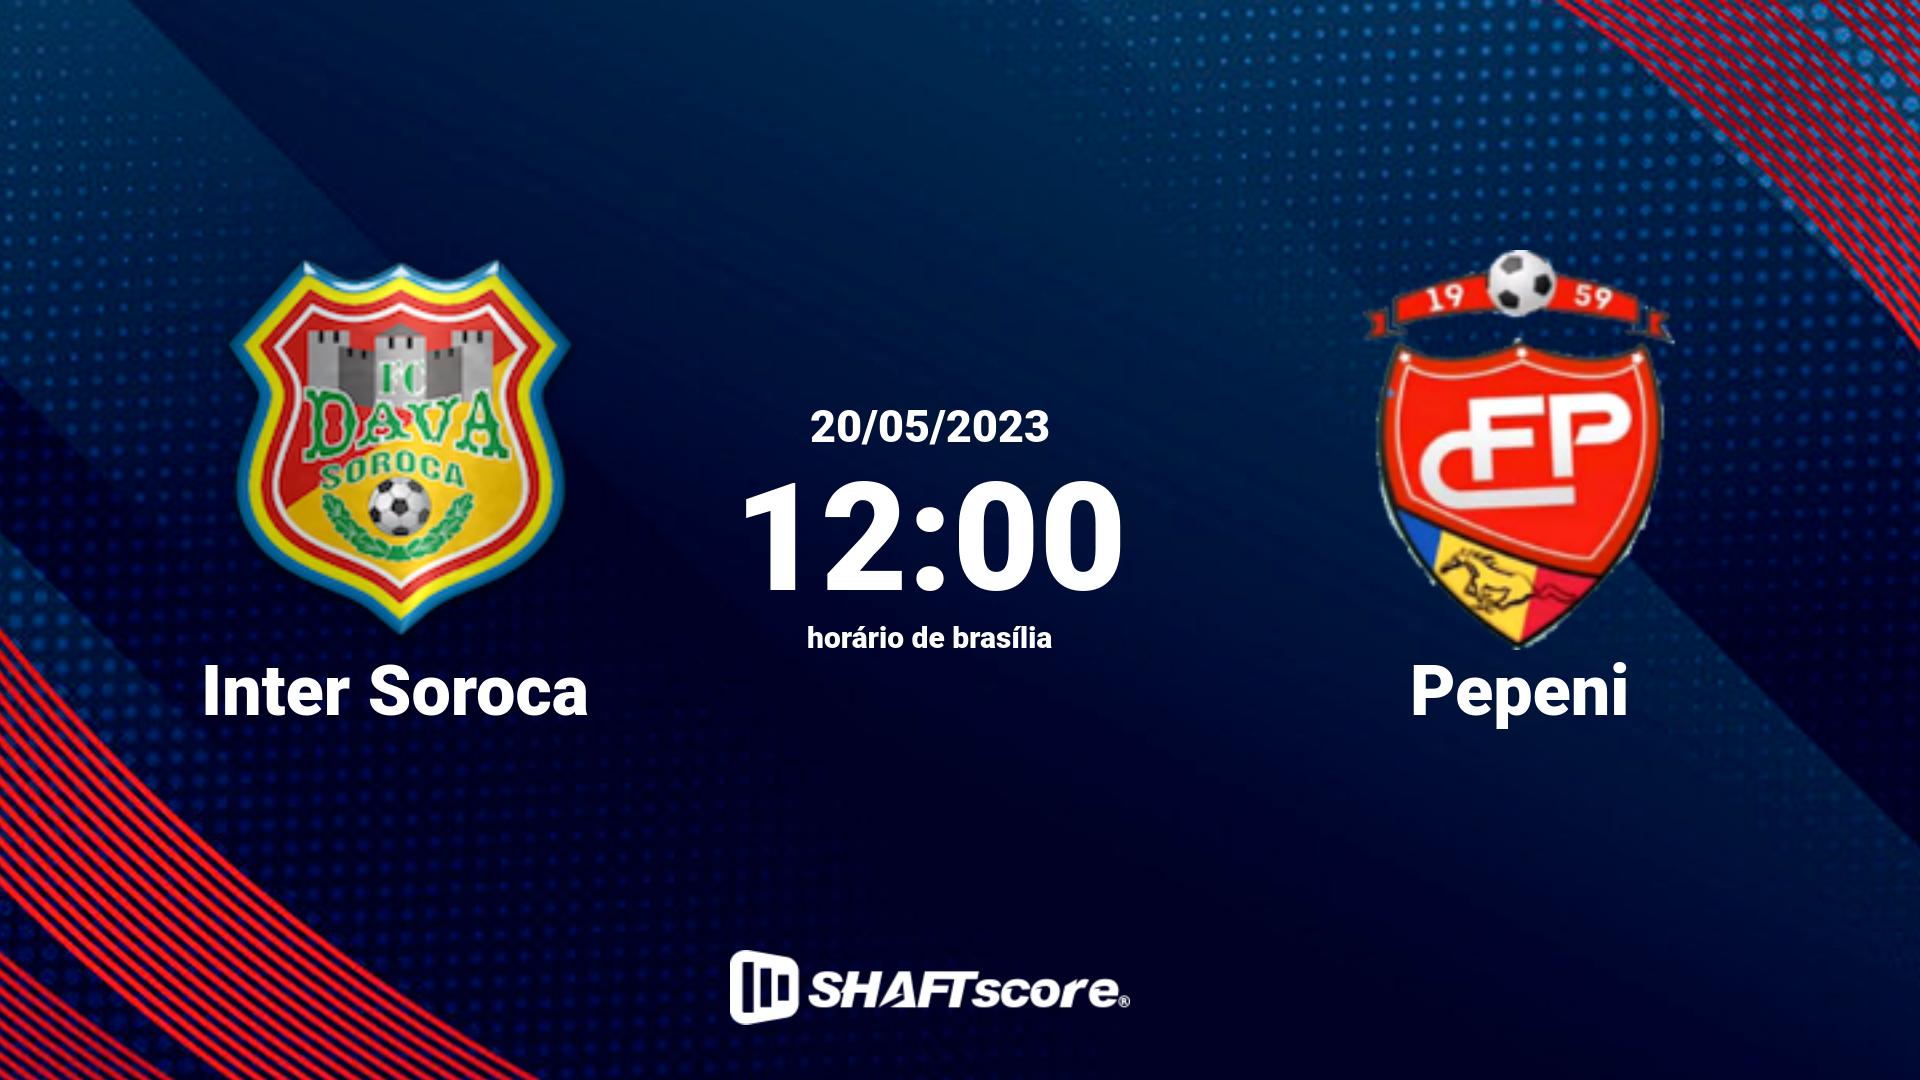 Estatísticas do jogo Inter Soroca vs Pepeni 20.05 12:00